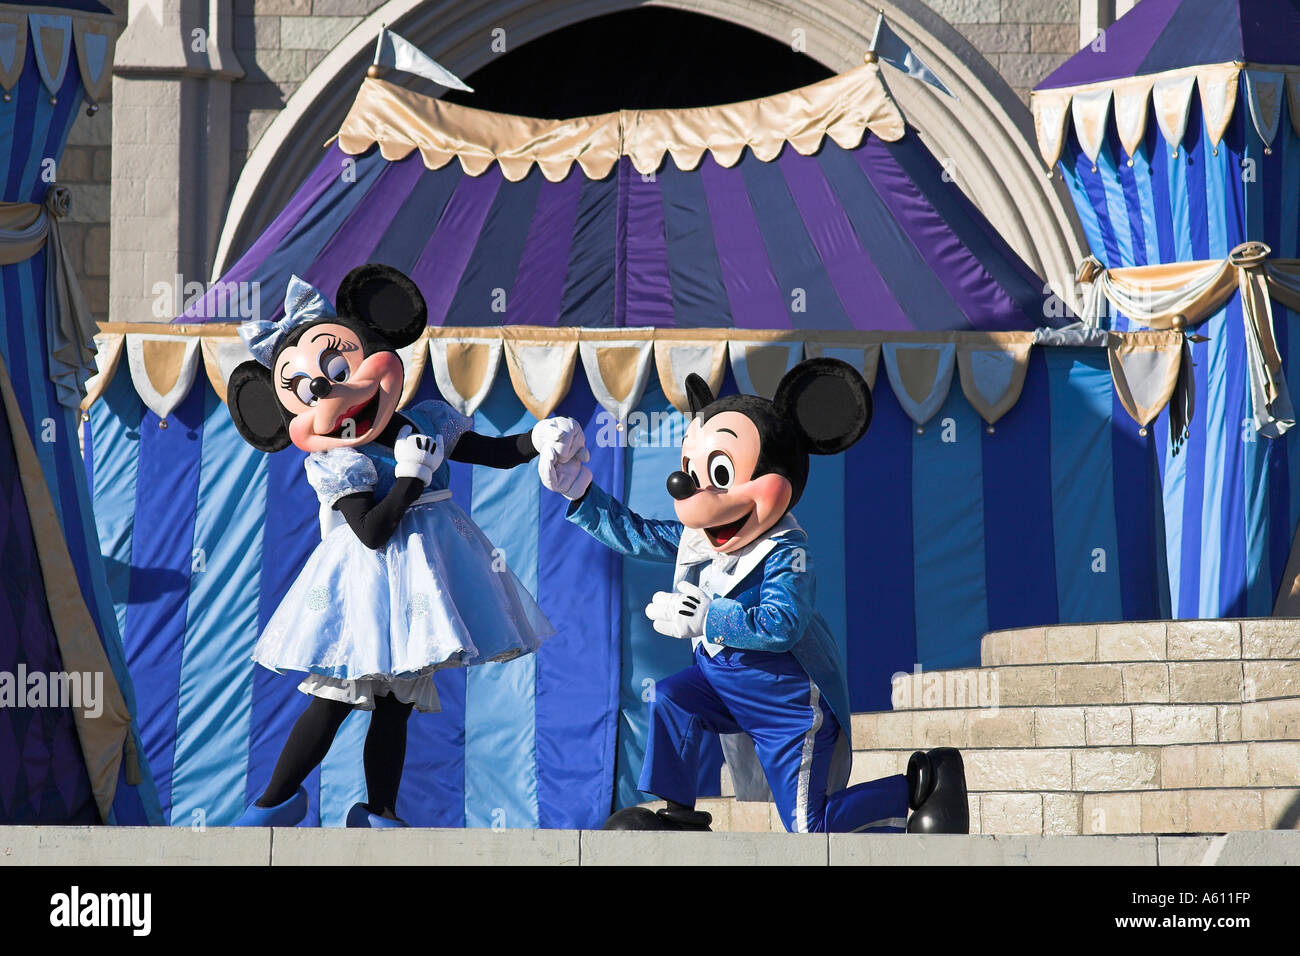 Topolino e Minnie Mouse sul palco, il Magic Kingdom, Orlando, Florida, Stati Uniti d'America Foto Stock